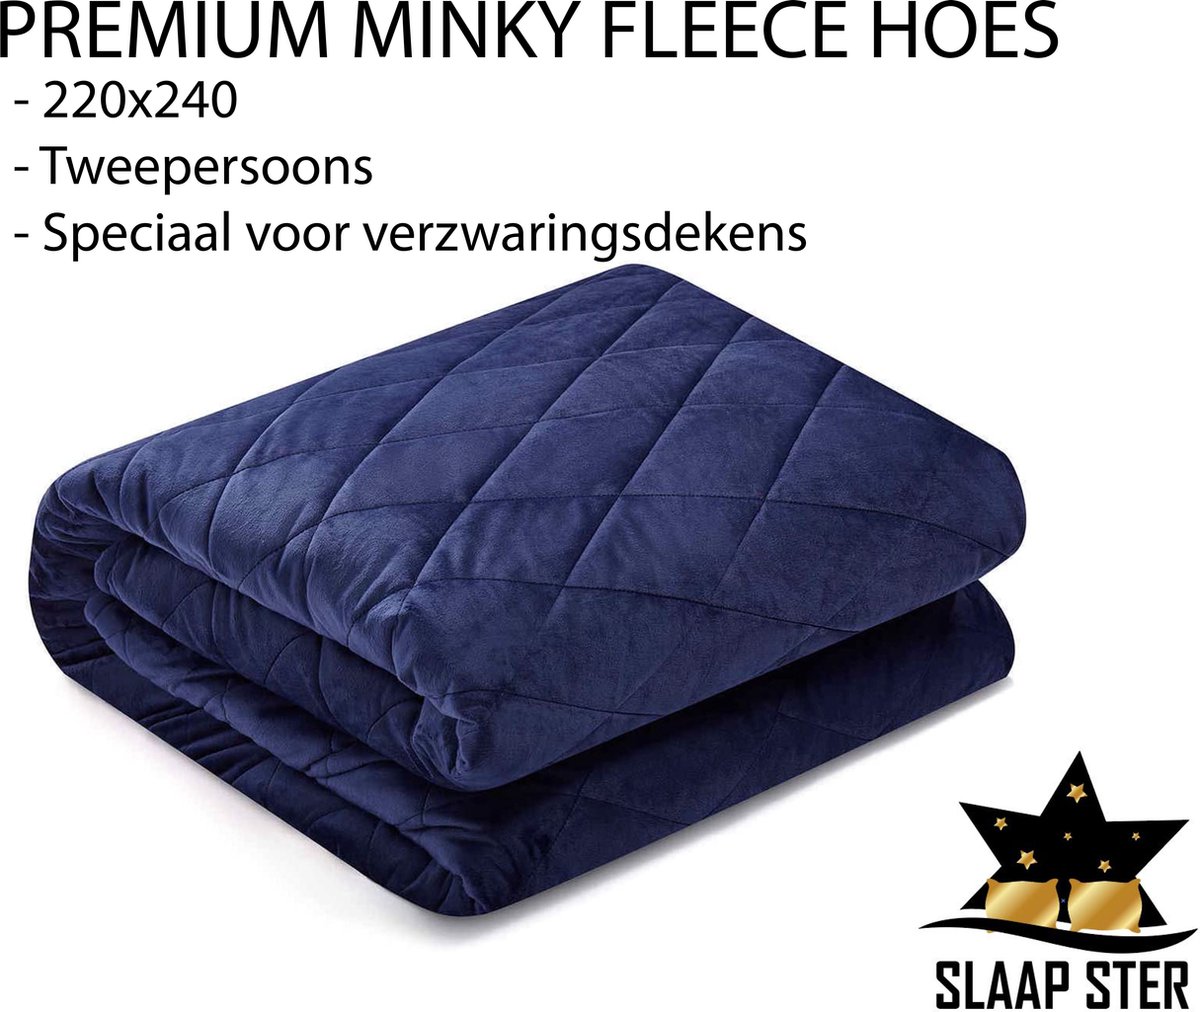 Verzwaringsdeken Hoes warm winter Blauw – minky fleece - Geschikt voor iedere SlaapSter verzwaringsdeken - 220x240